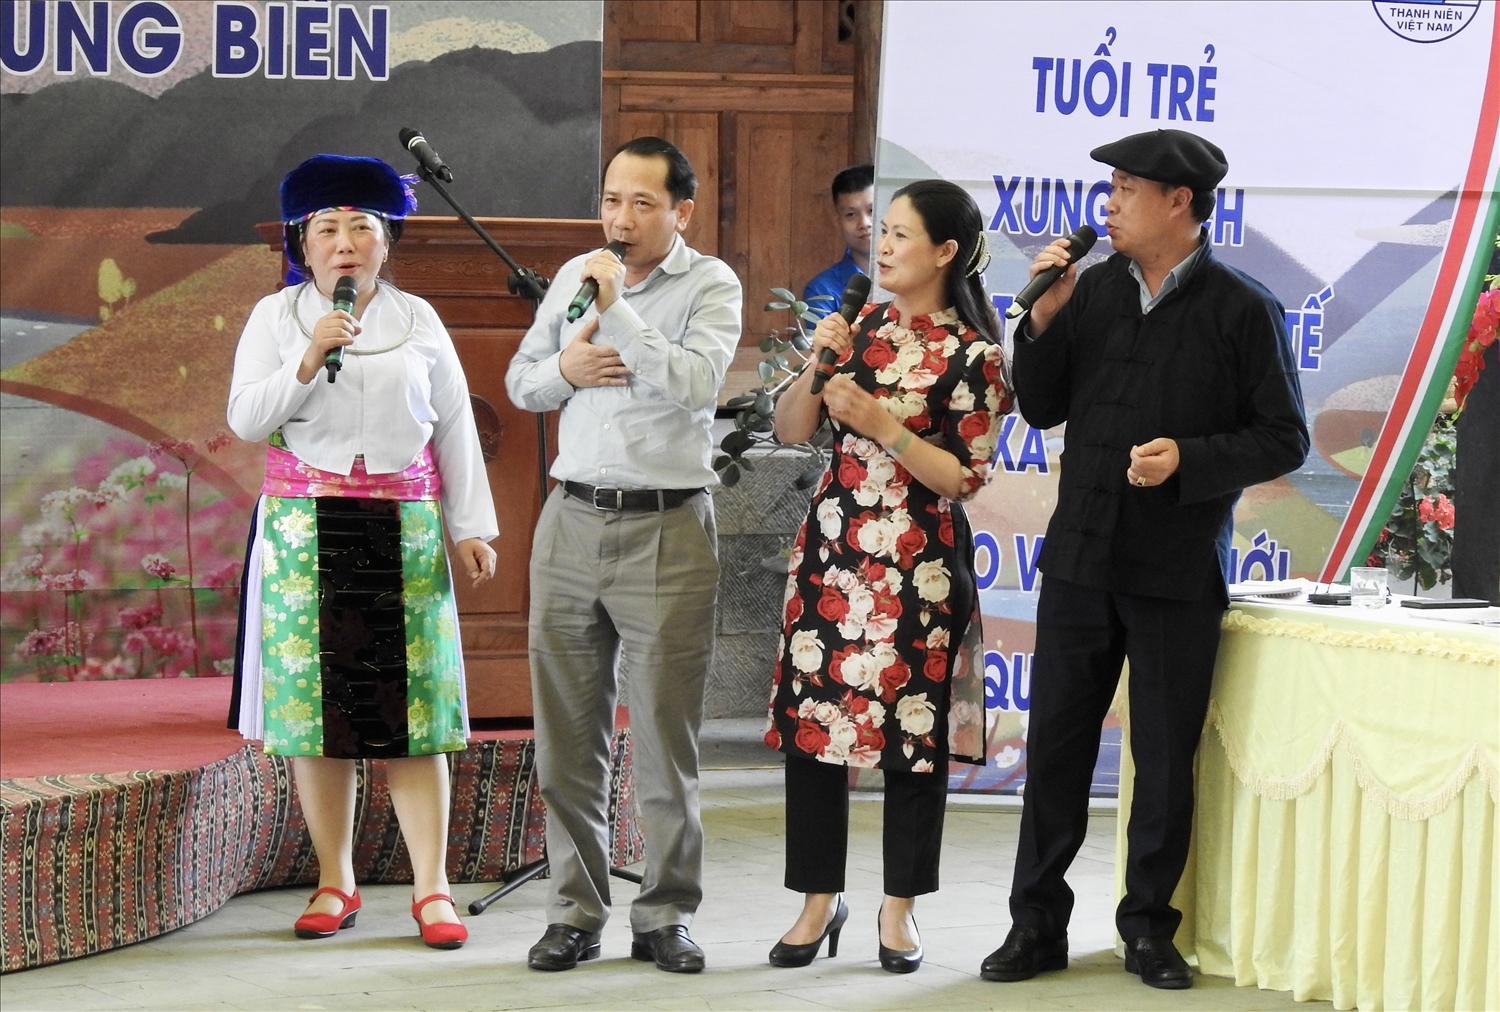 Ông Trần Đức Quý, Phó Chủ tịch UBND tỉnh Hà Giang (thứ 2 bên trái sang) cùng đại diện Lãnh đạo Huyện ủy Mèo Vạc hát giao lưu tại buổi Tọa đàm